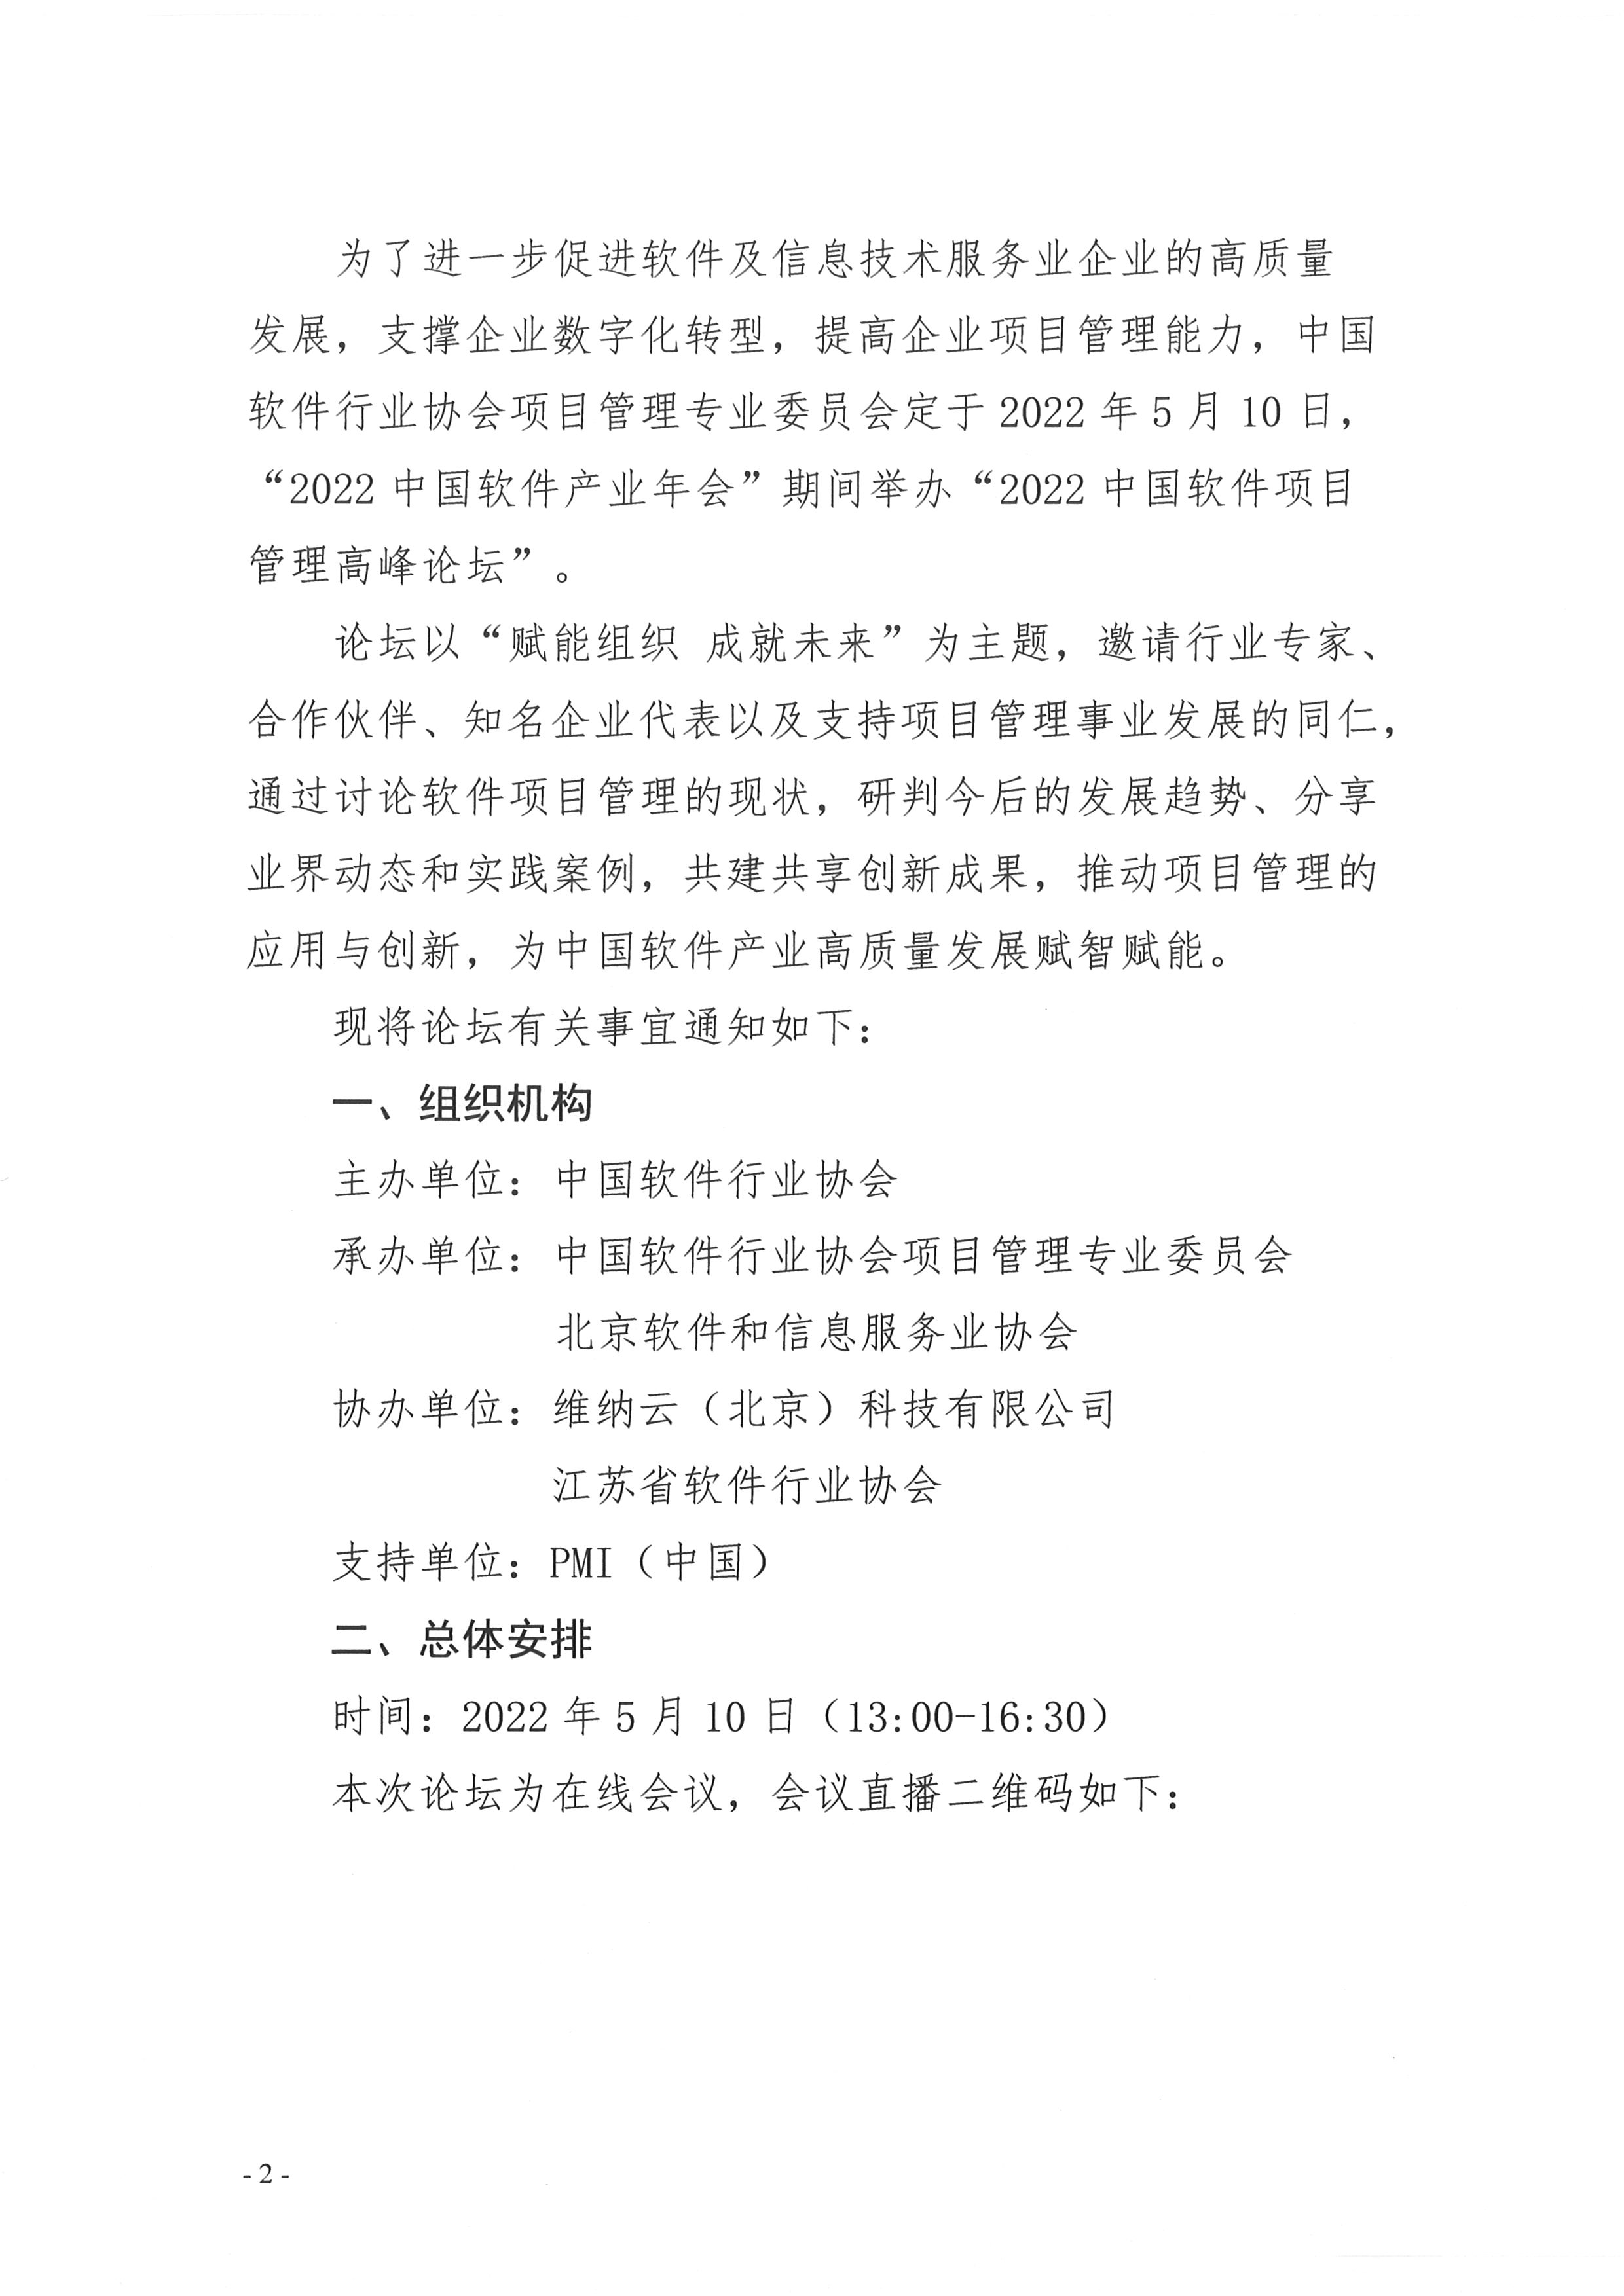 最新-2022中国软件项目管理高峰论坛通知(3)_页面_2.jpg